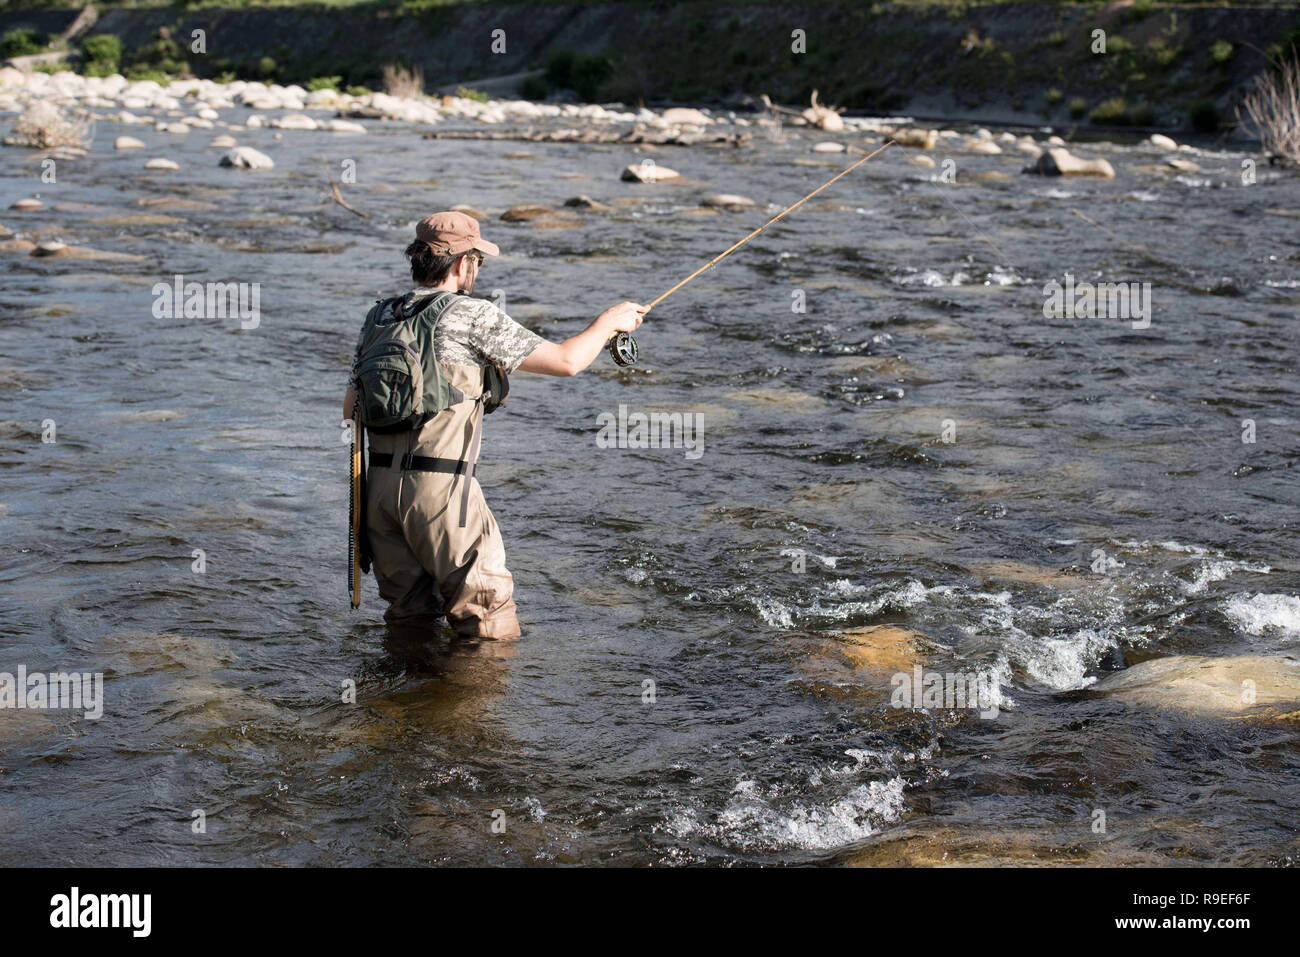 Aubenas (sureste de Francia): el pescador con mosca en el río Ardèche proyectando su caña de pescar. Foto de stock